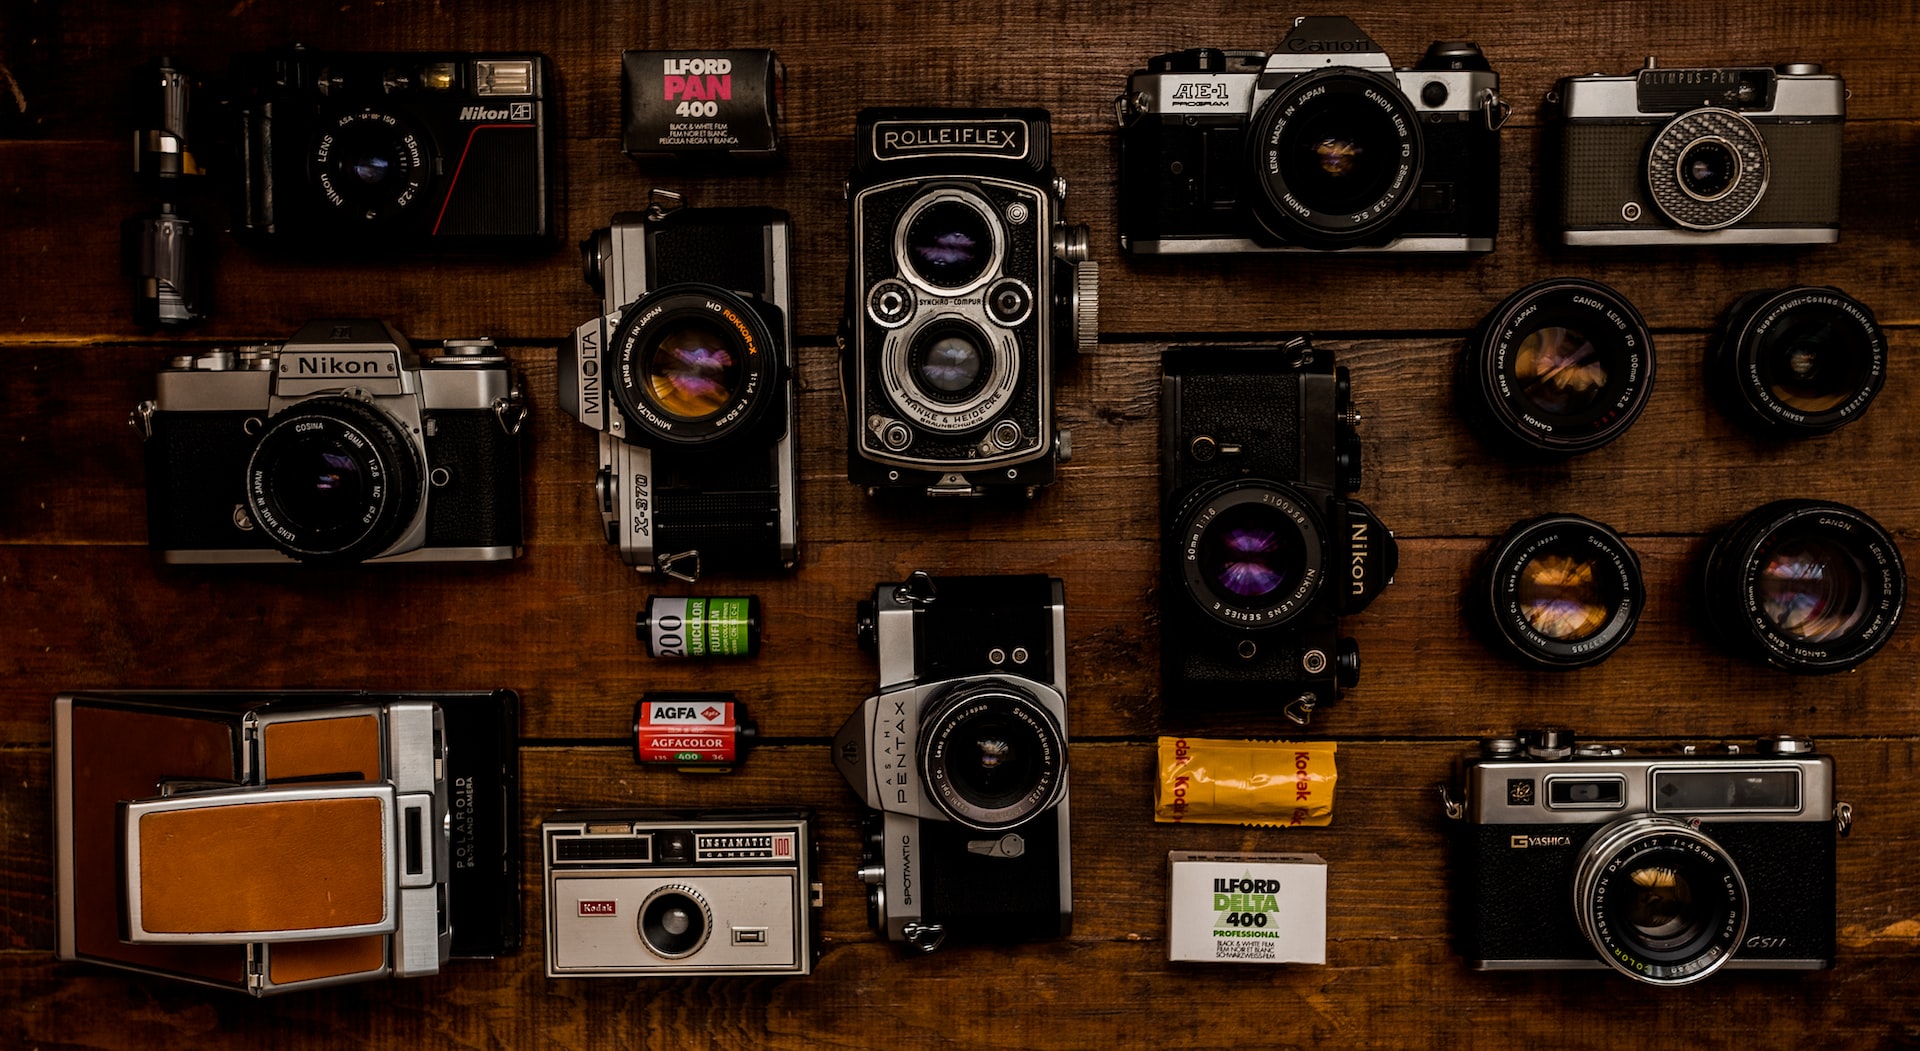 Welche Ausrüstung wird benötigt, um ein Foto-Business zu gründen?